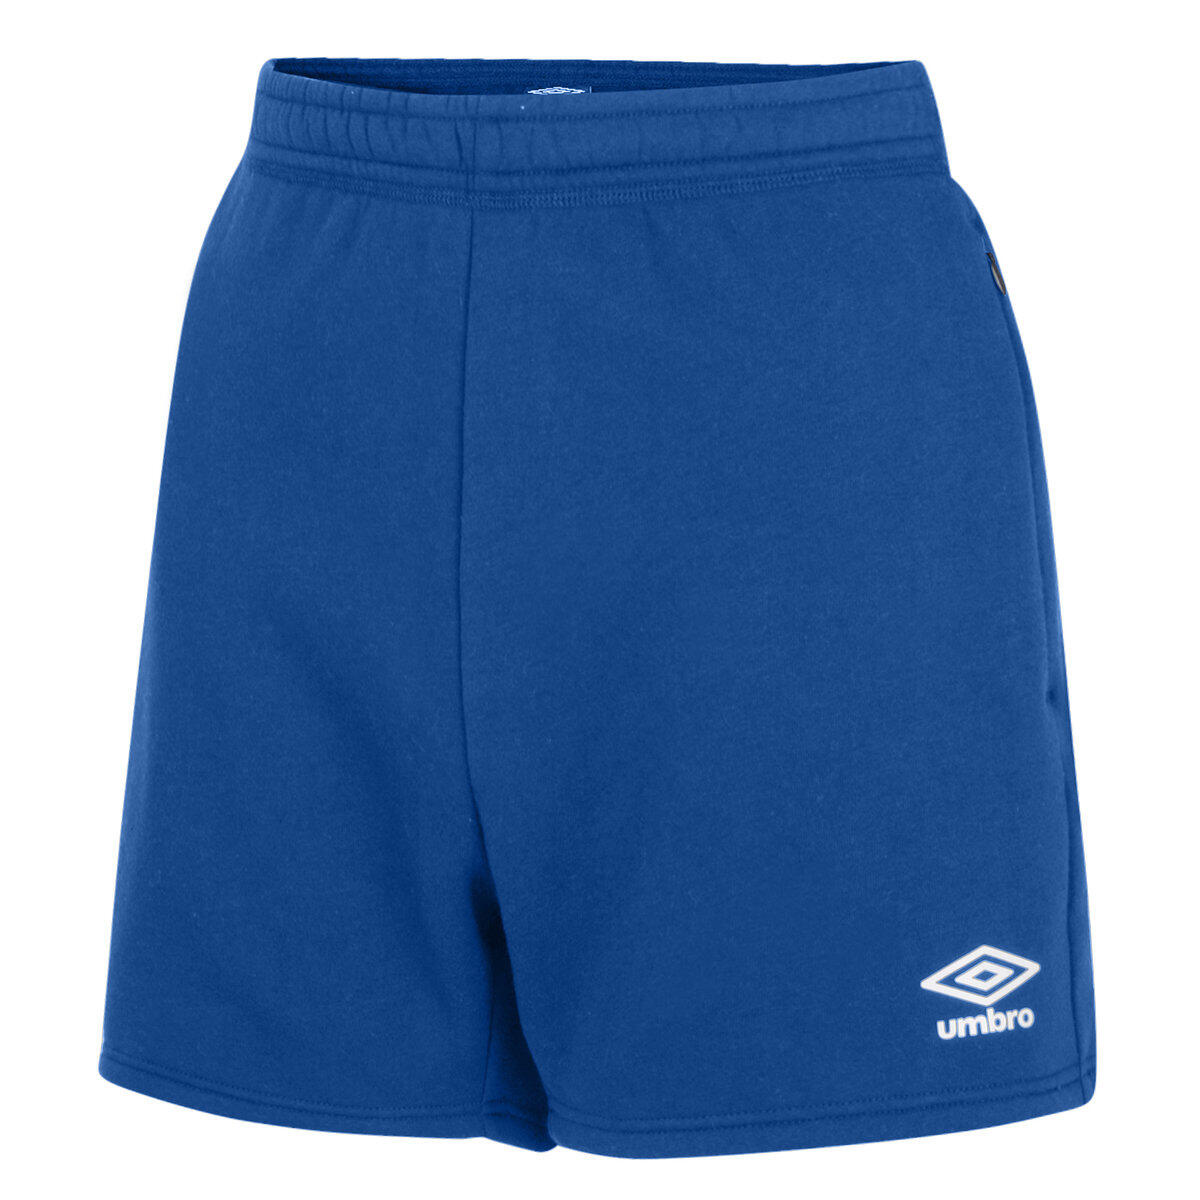 Womens/Ladies Club Leisure Shorts (Royal Blue/White) 1/4